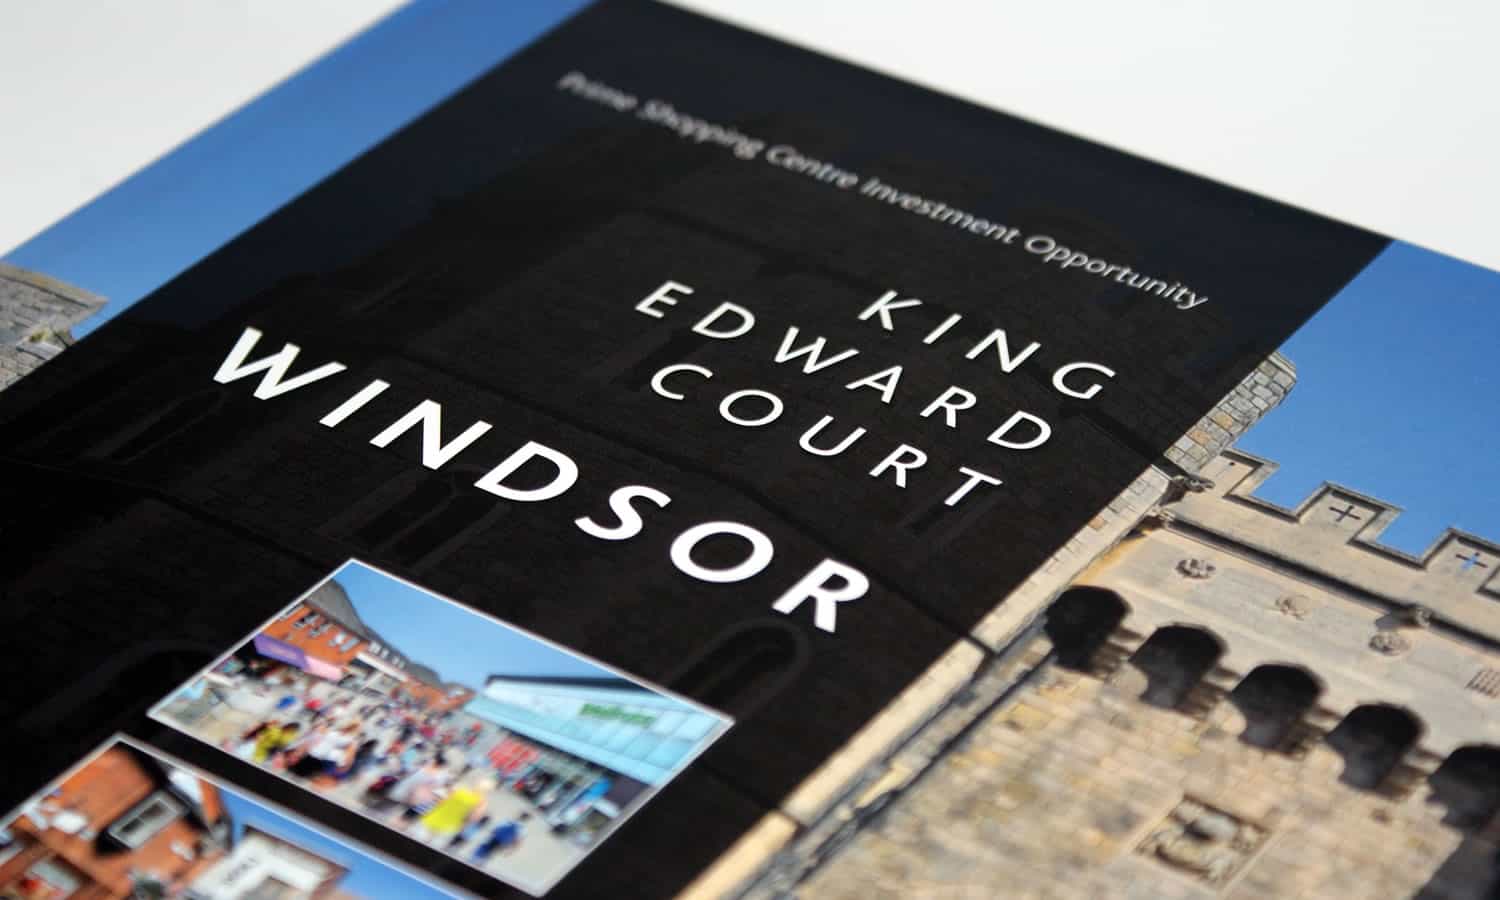 King Edward Court, Windsor